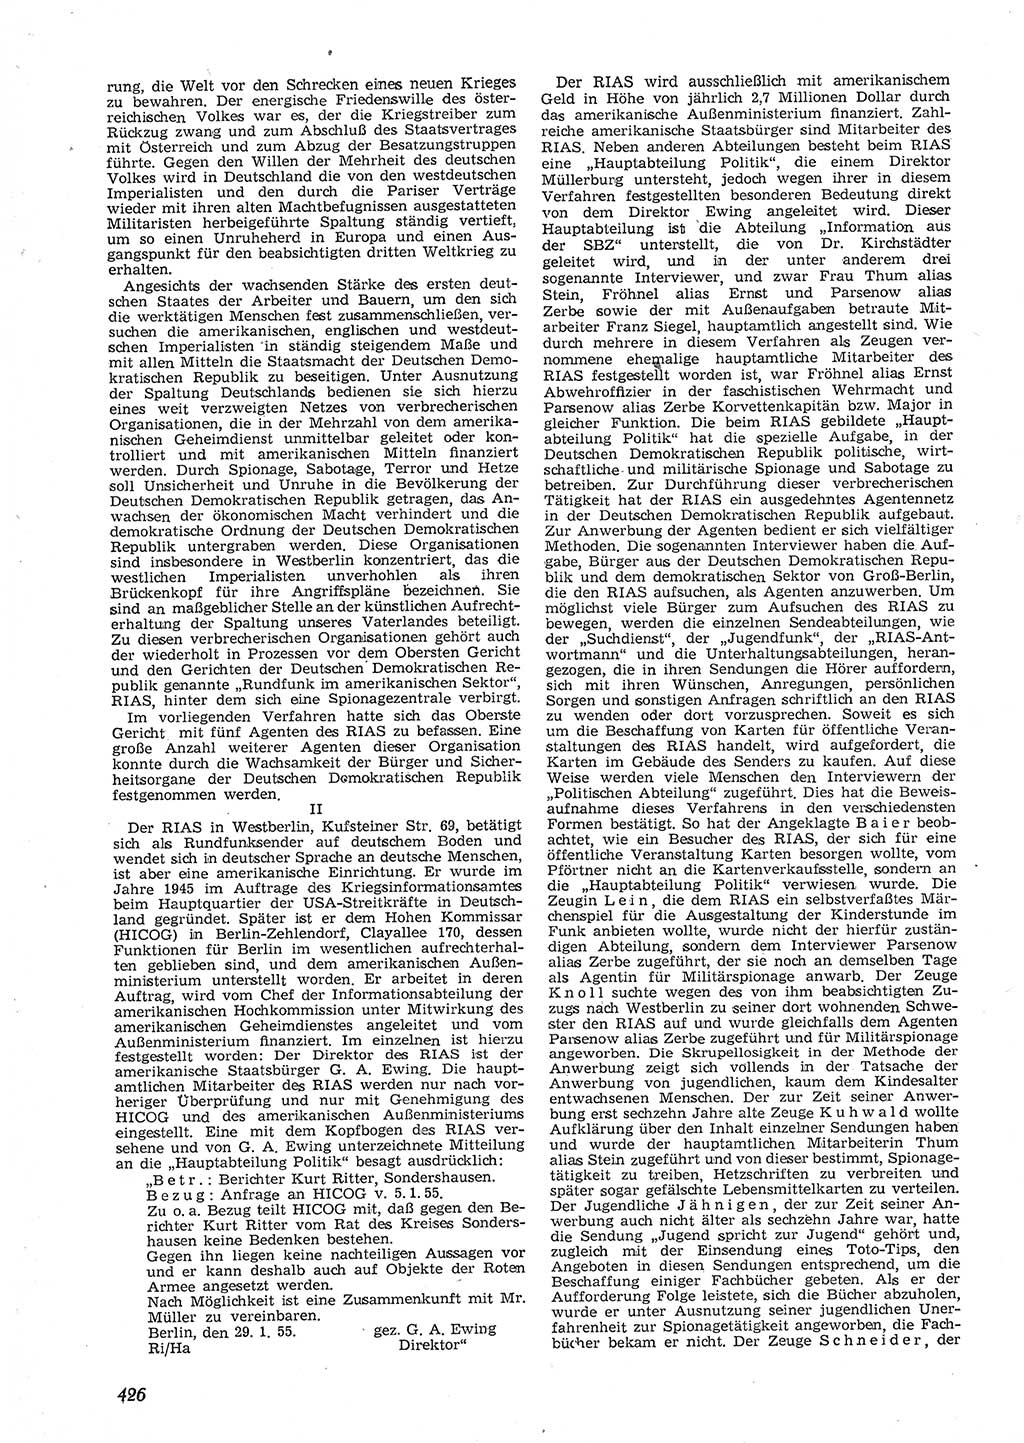 Neue Justiz (NJ), Zeitschrift für Recht und Rechtswissenschaft [Deutsche Demokratische Republik (DDR)], 9. Jahrgang 1955, Seite 426 (NJ DDR 1955, S. 426)